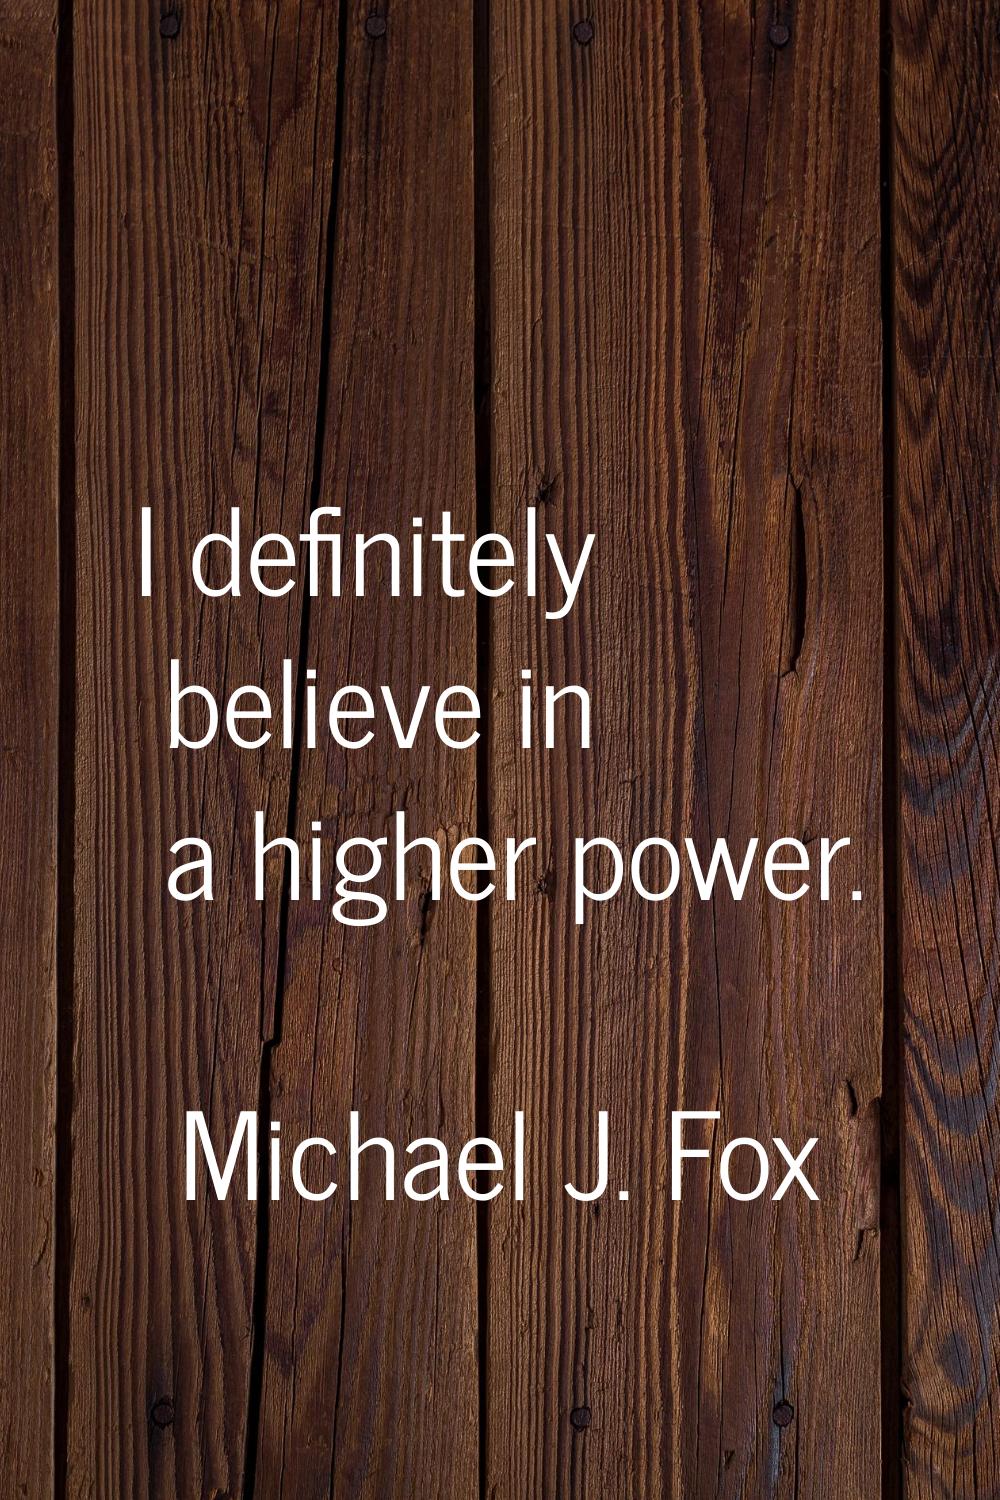 I definitely believe in a higher power.